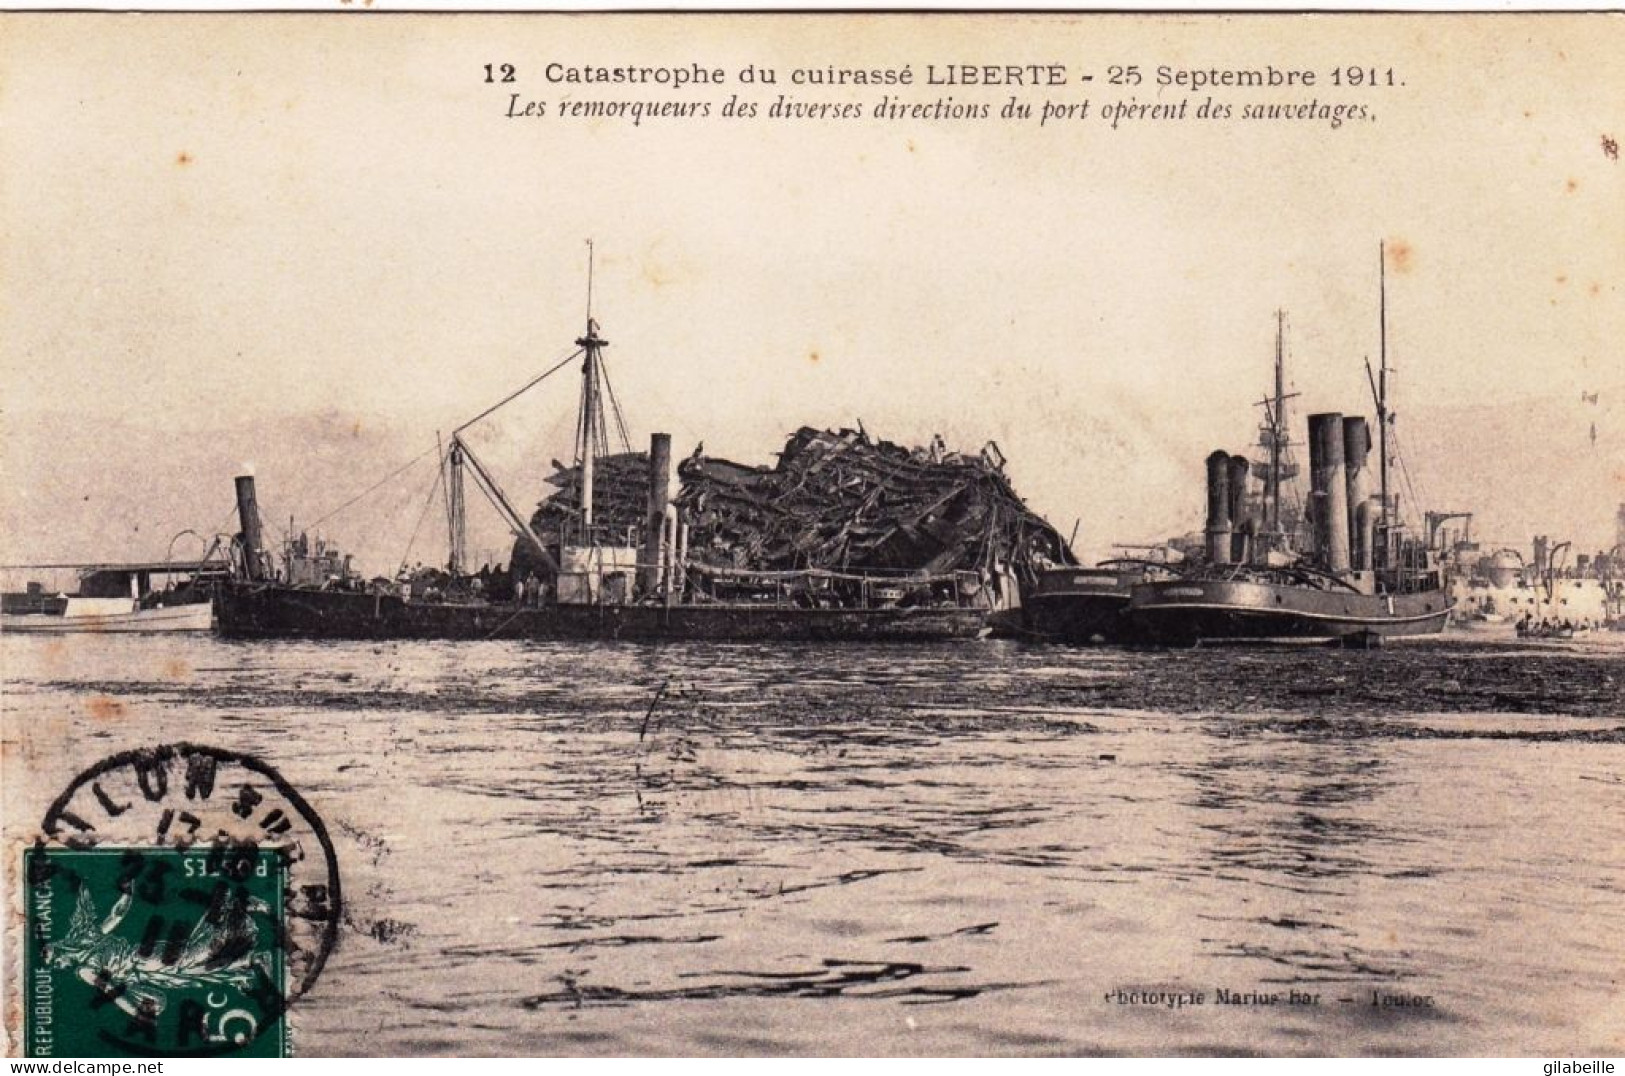 83 - TOULON - Catastrophe Du Cuirassé Liberté - 25 Septembre 1911 - Les Remorqueurs Operent Des Sauvetages - Marine Mili - Toulon